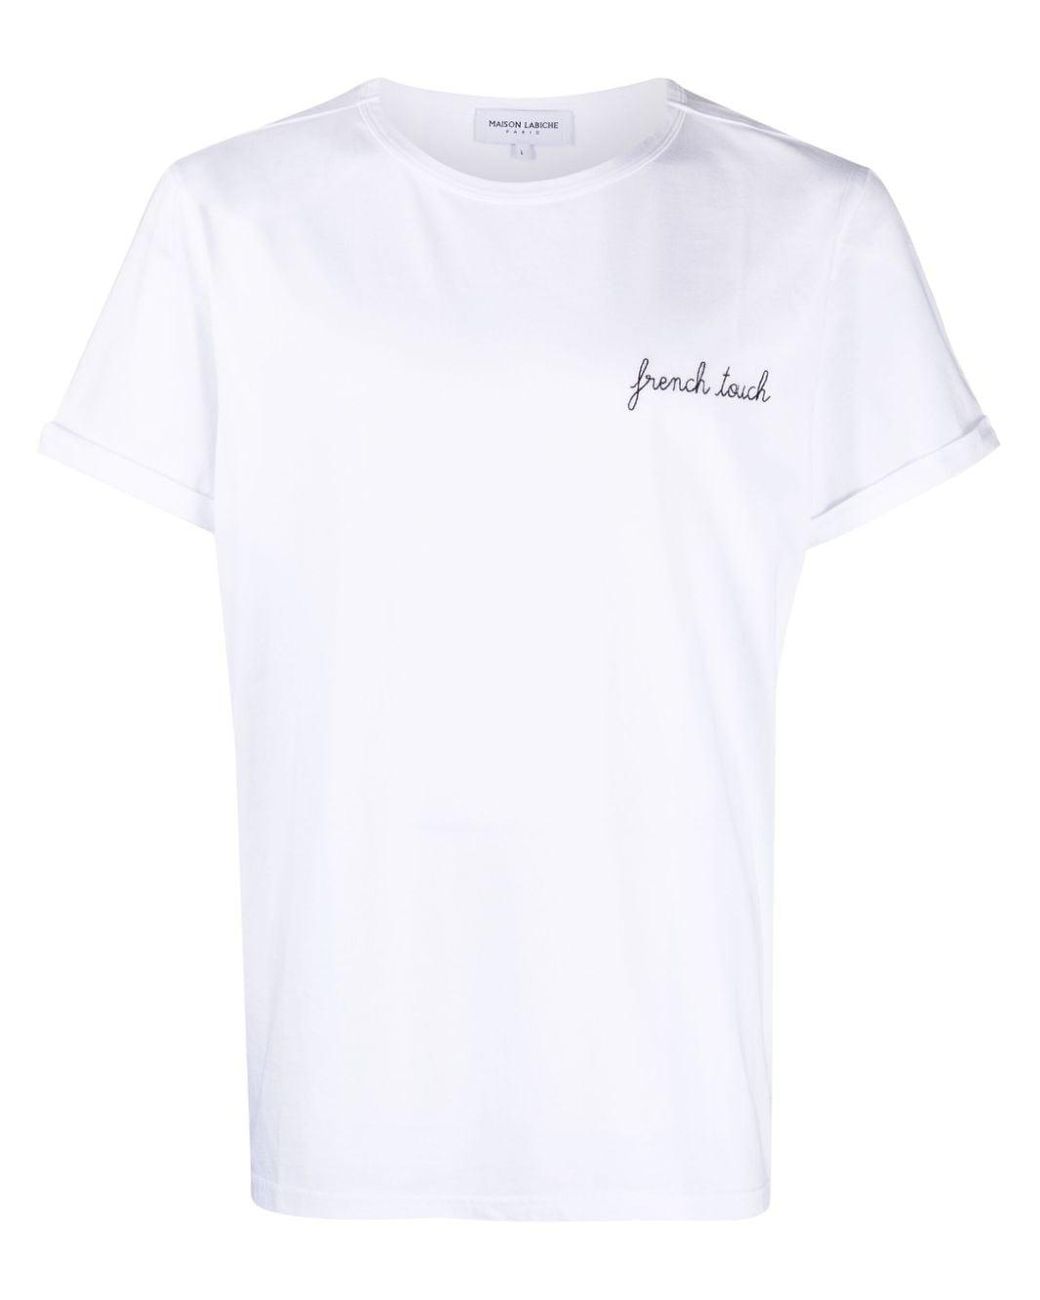 Camiseta French Touch Maison Labiche de hombre de color Blanco | Lyst